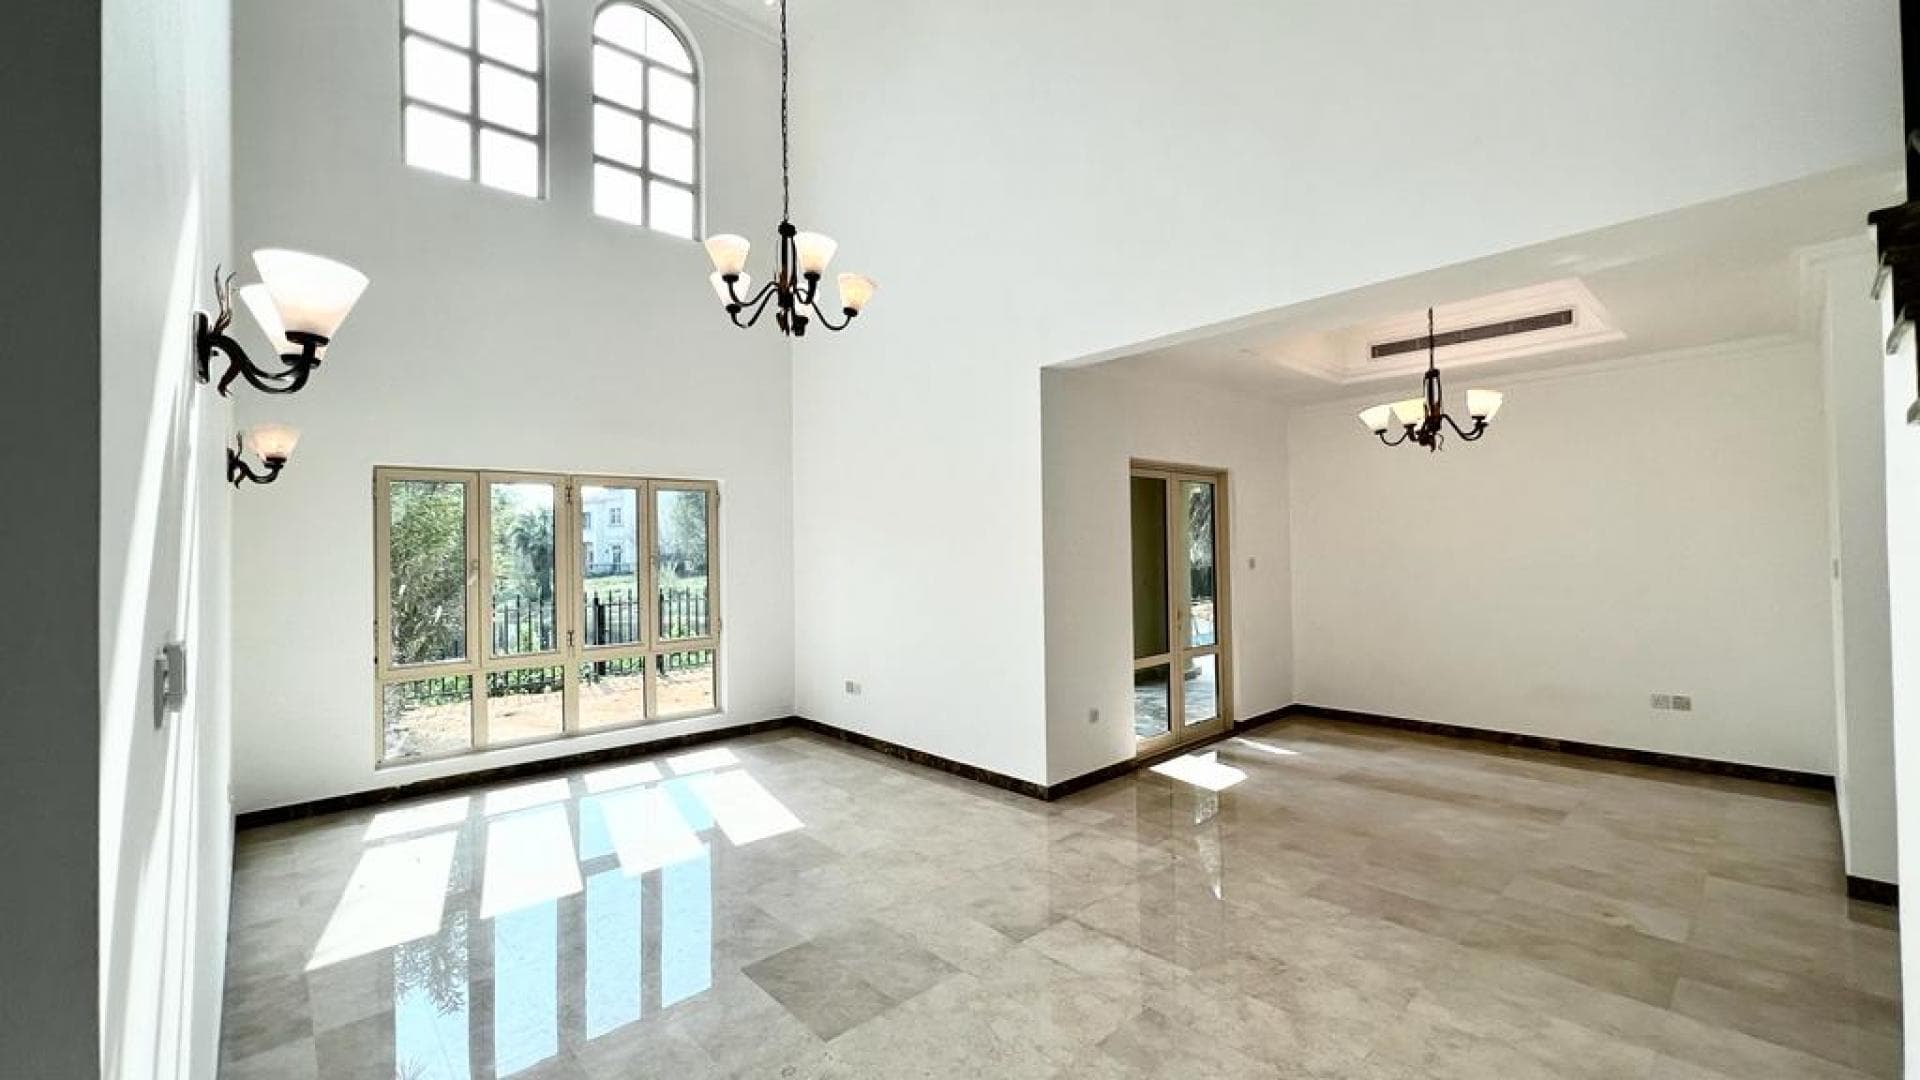 4 Bedroom Villa For Rent Al Thamam 13 Lp18938 167bb859f7213300.jpeg